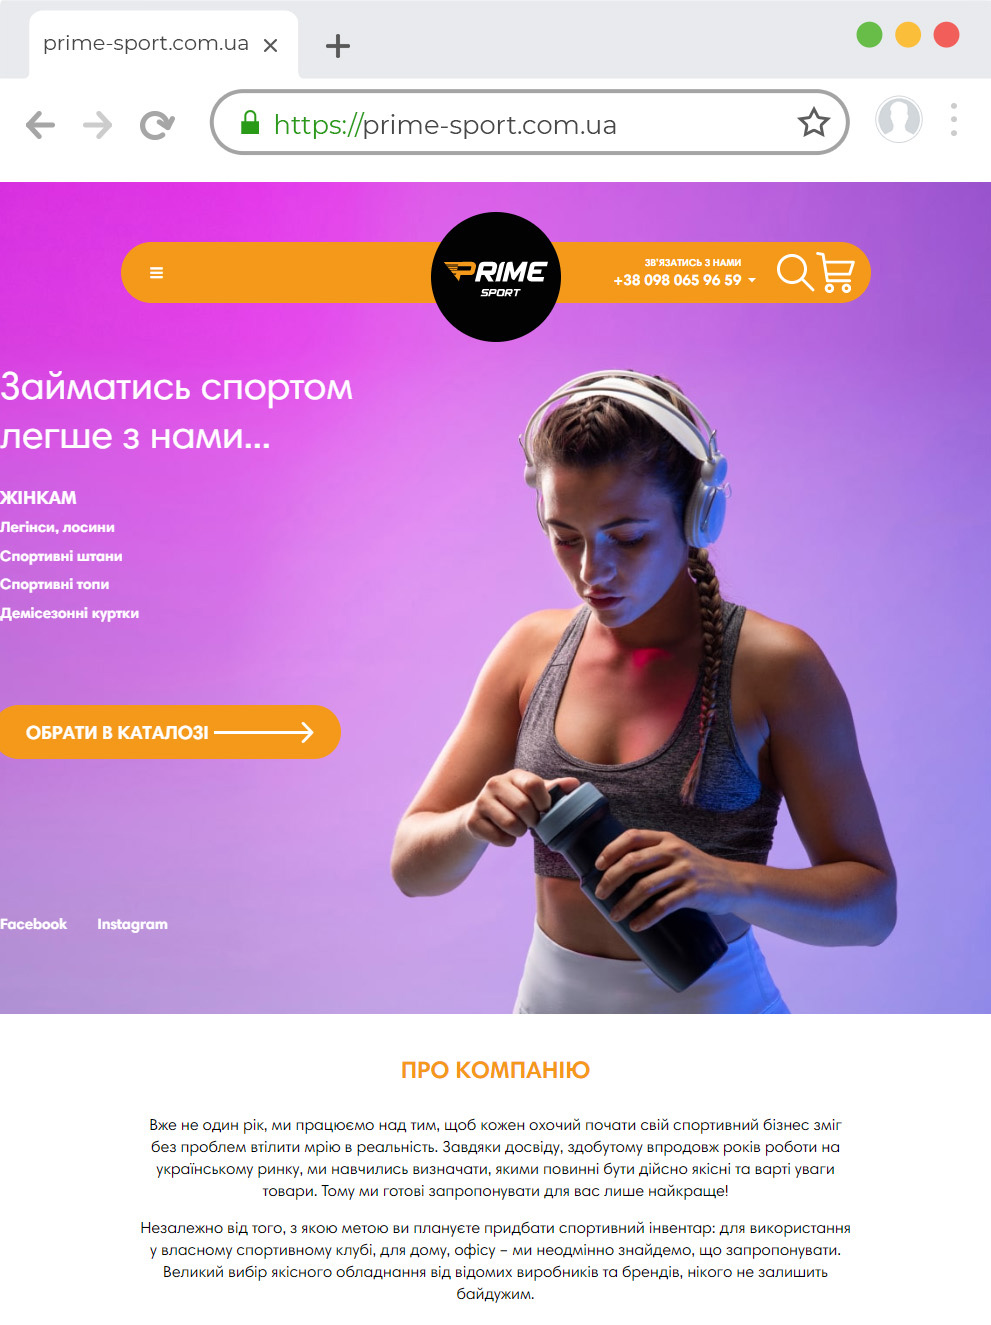 Розробка інтернет магазину спортивних товарів prime-sport com ua